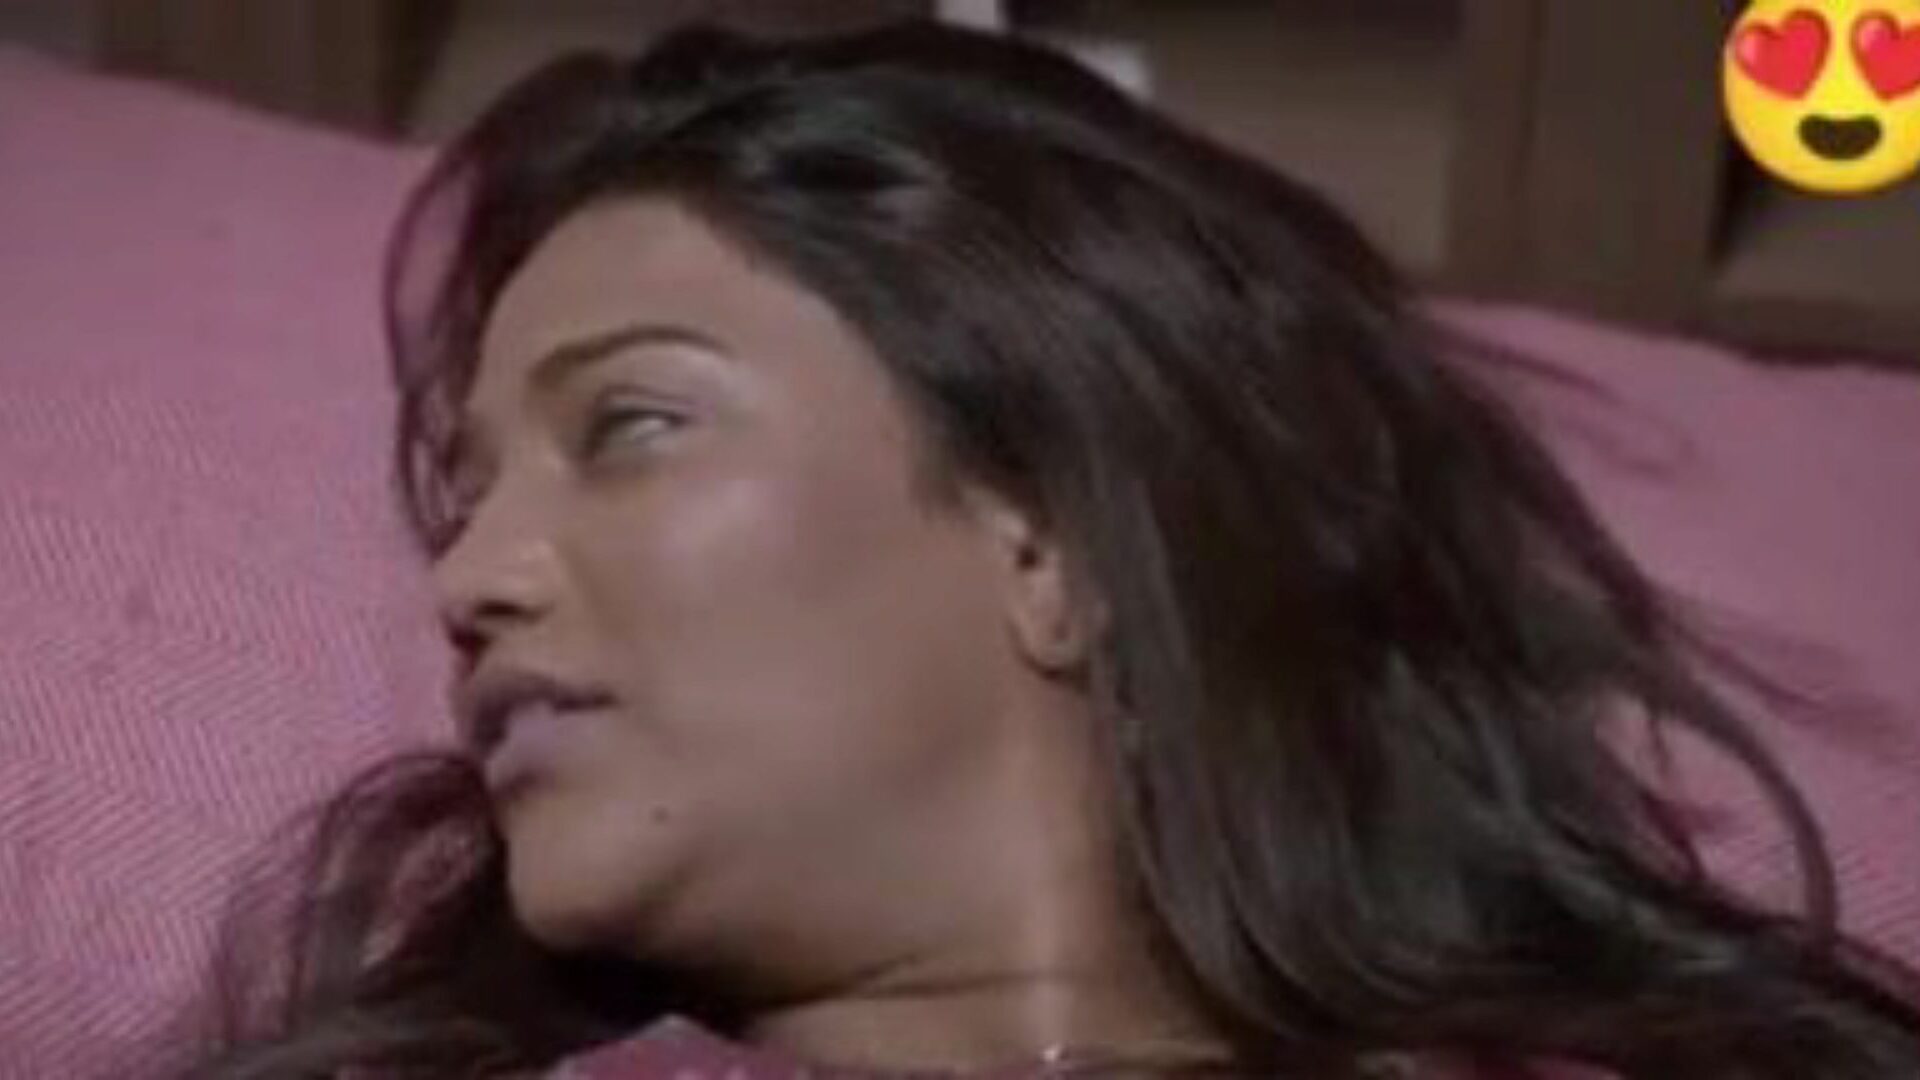 dubbele dhamaka saree seks, gratis indische porno da: xhamster bekijk dubbele dhamaka saree seksfilm op xhamster, de enorme webbron voor geslachtsgemeenschap met tonnen gratis-voor-alle indiaanse nieuwe seks xxx & hindi pornofilmscènes